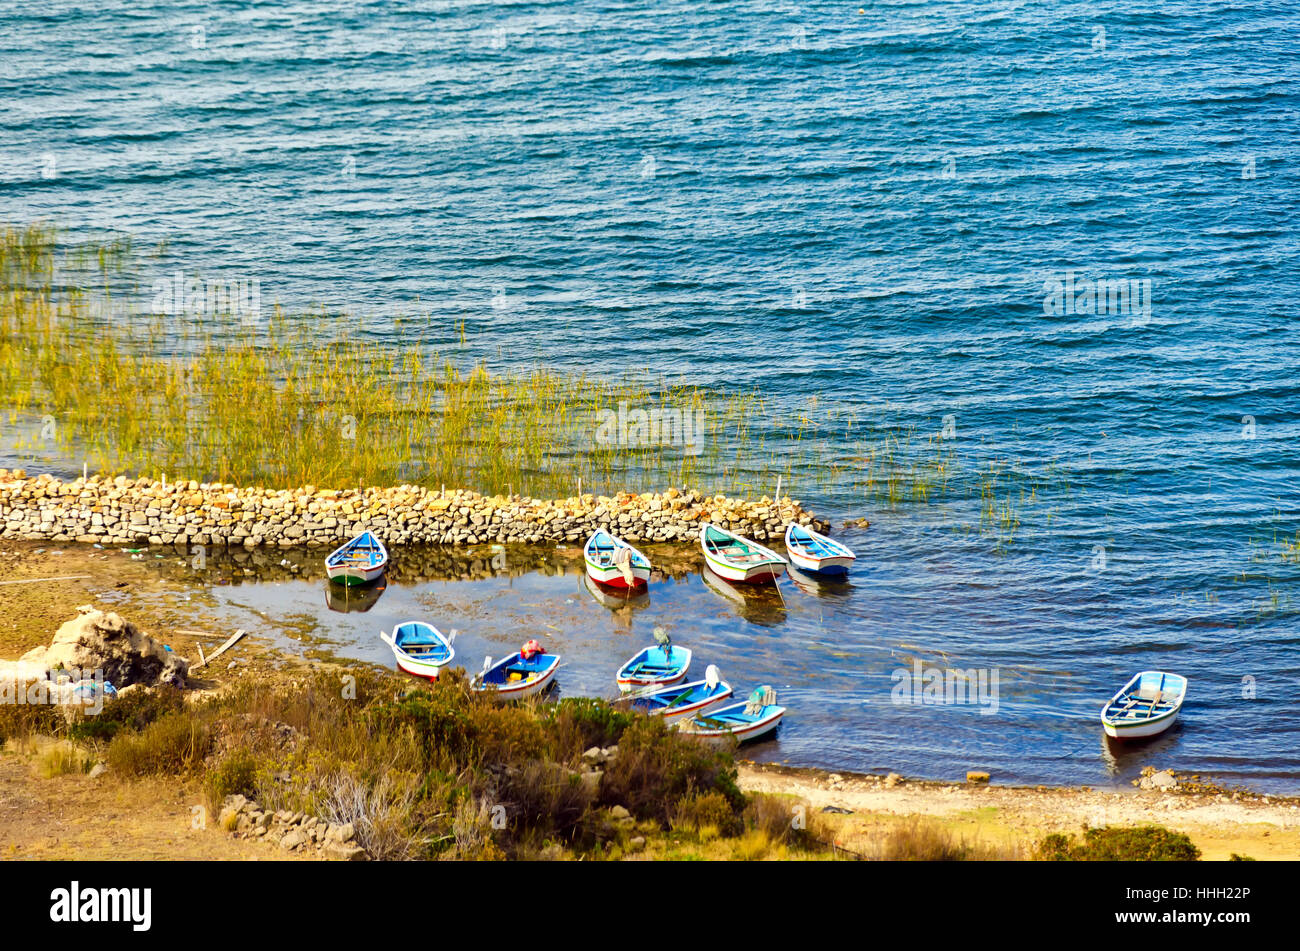 Twn piccole imbarcazioni sulla riva del lago Titicaca sull'isola del sole in Bolivia Foto Stock